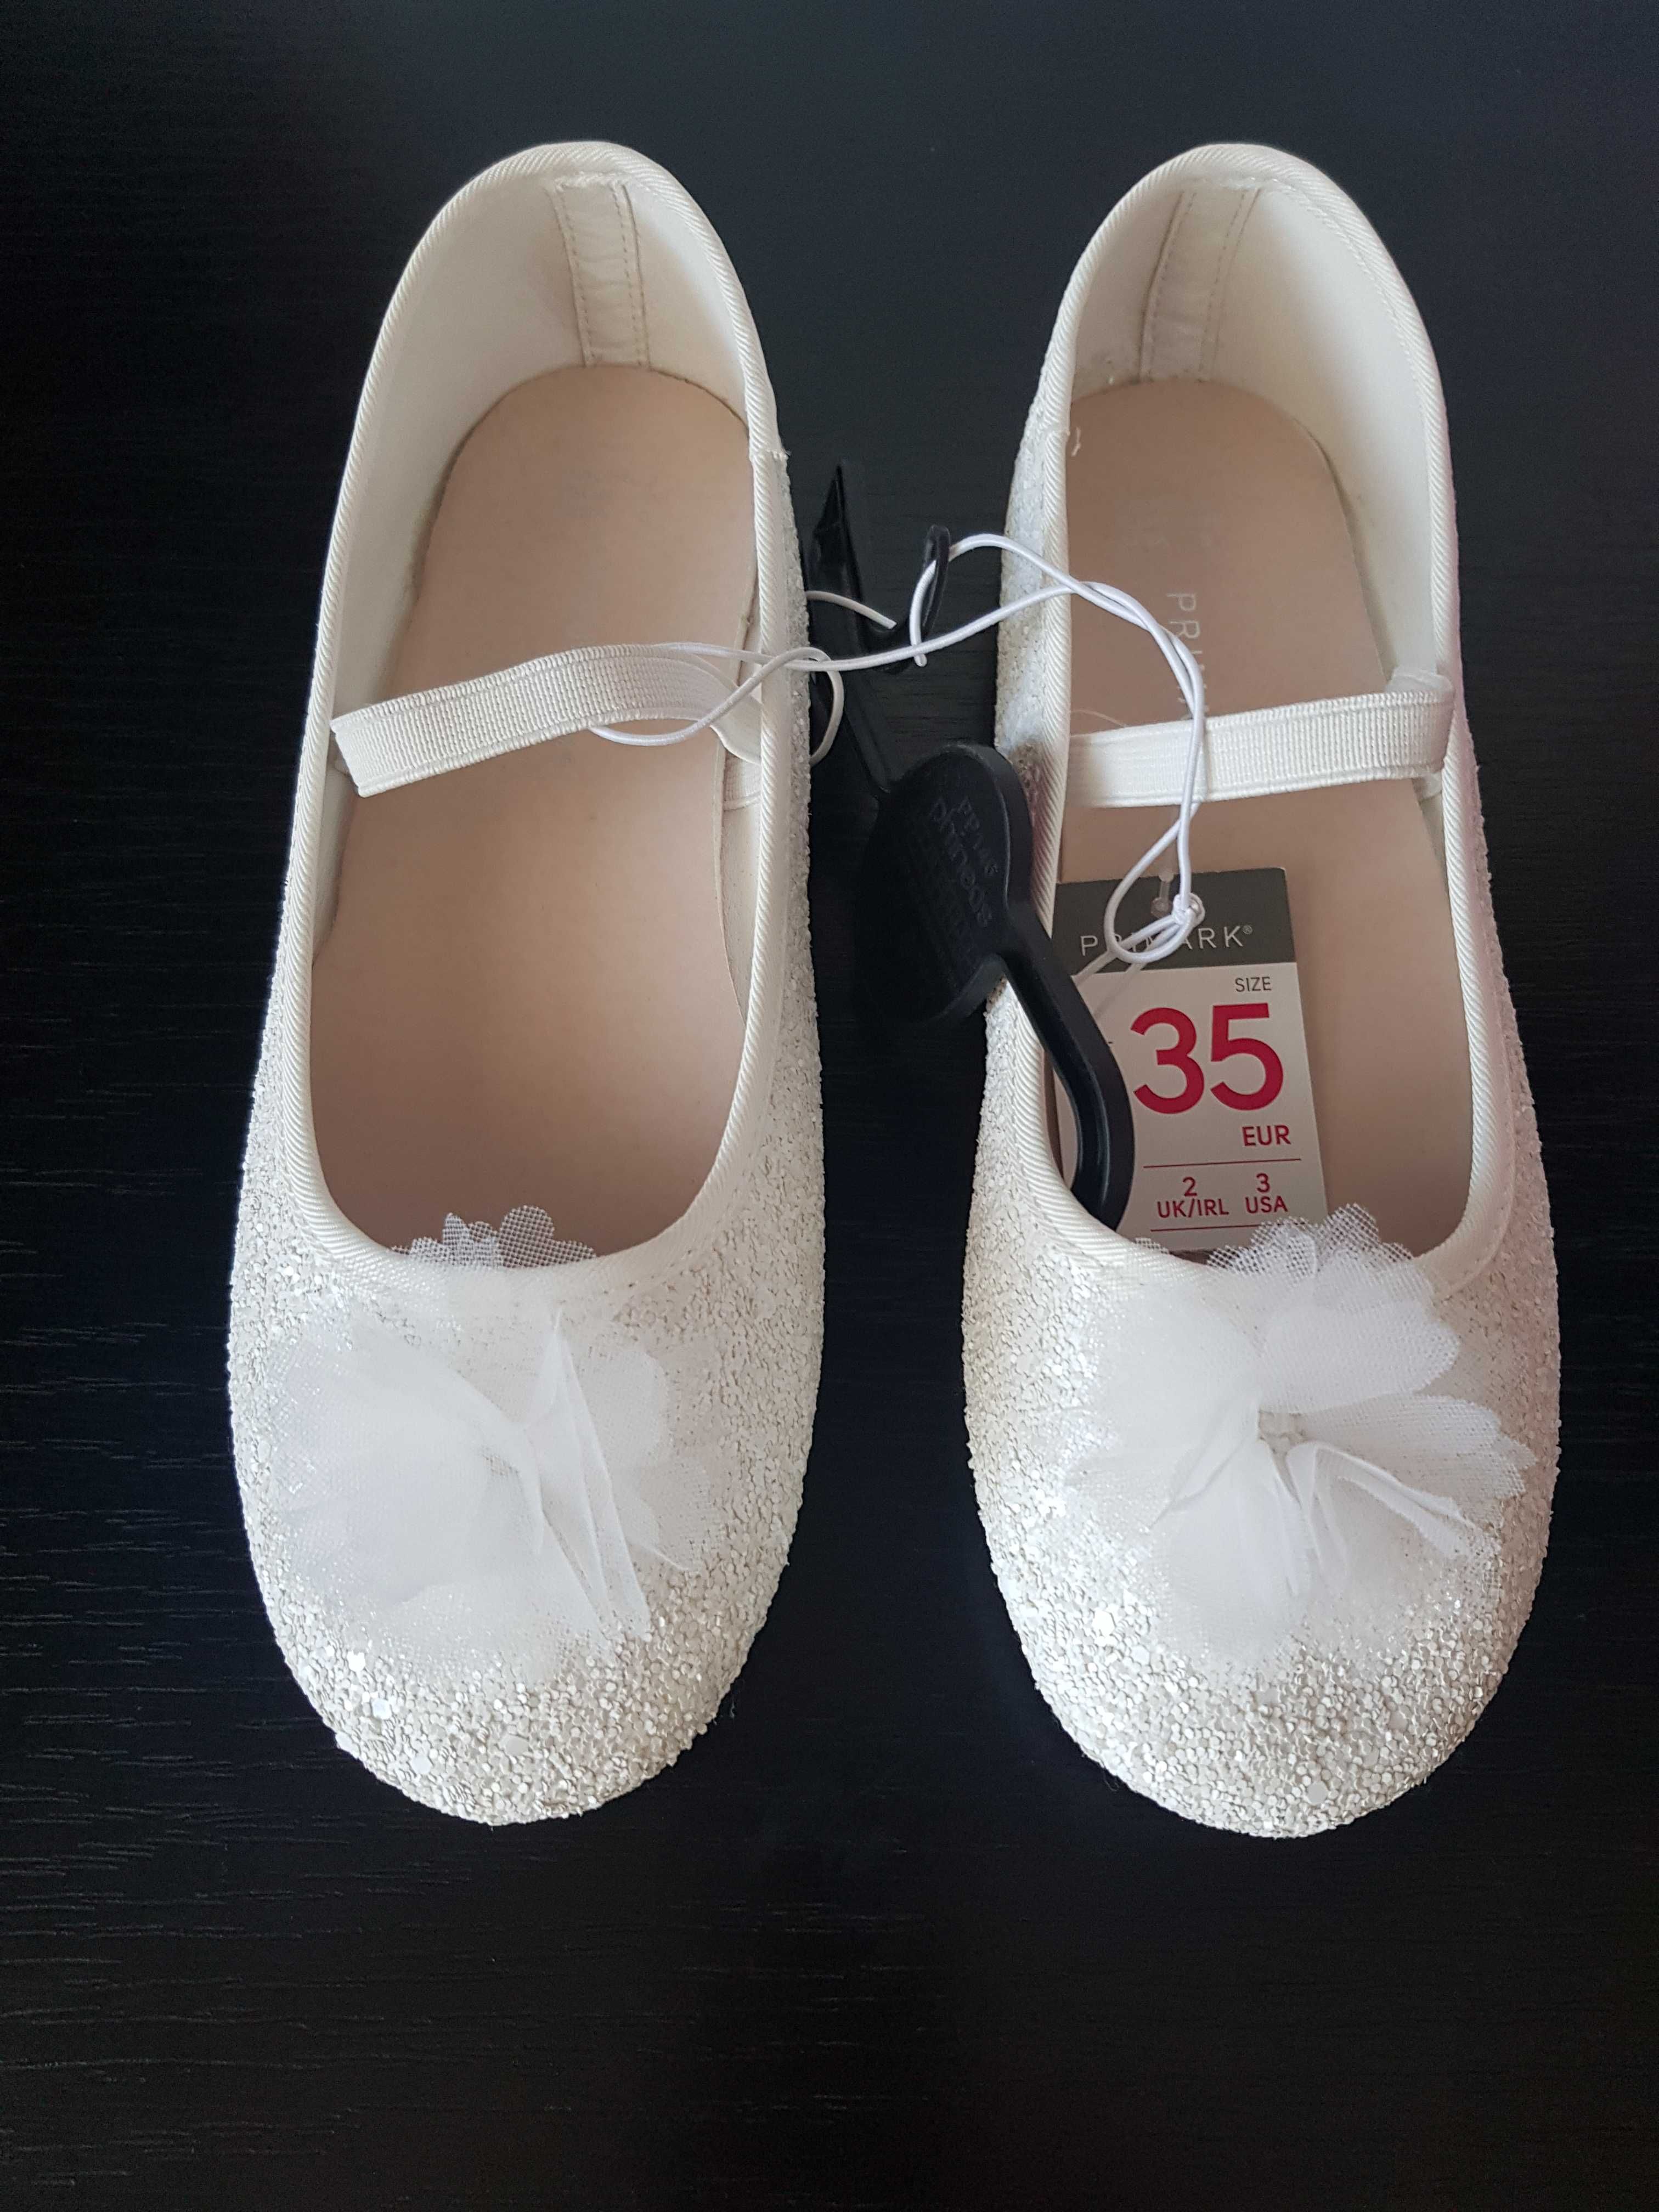 Pantofi NOI albi cu floricica alba 35 (22cm)